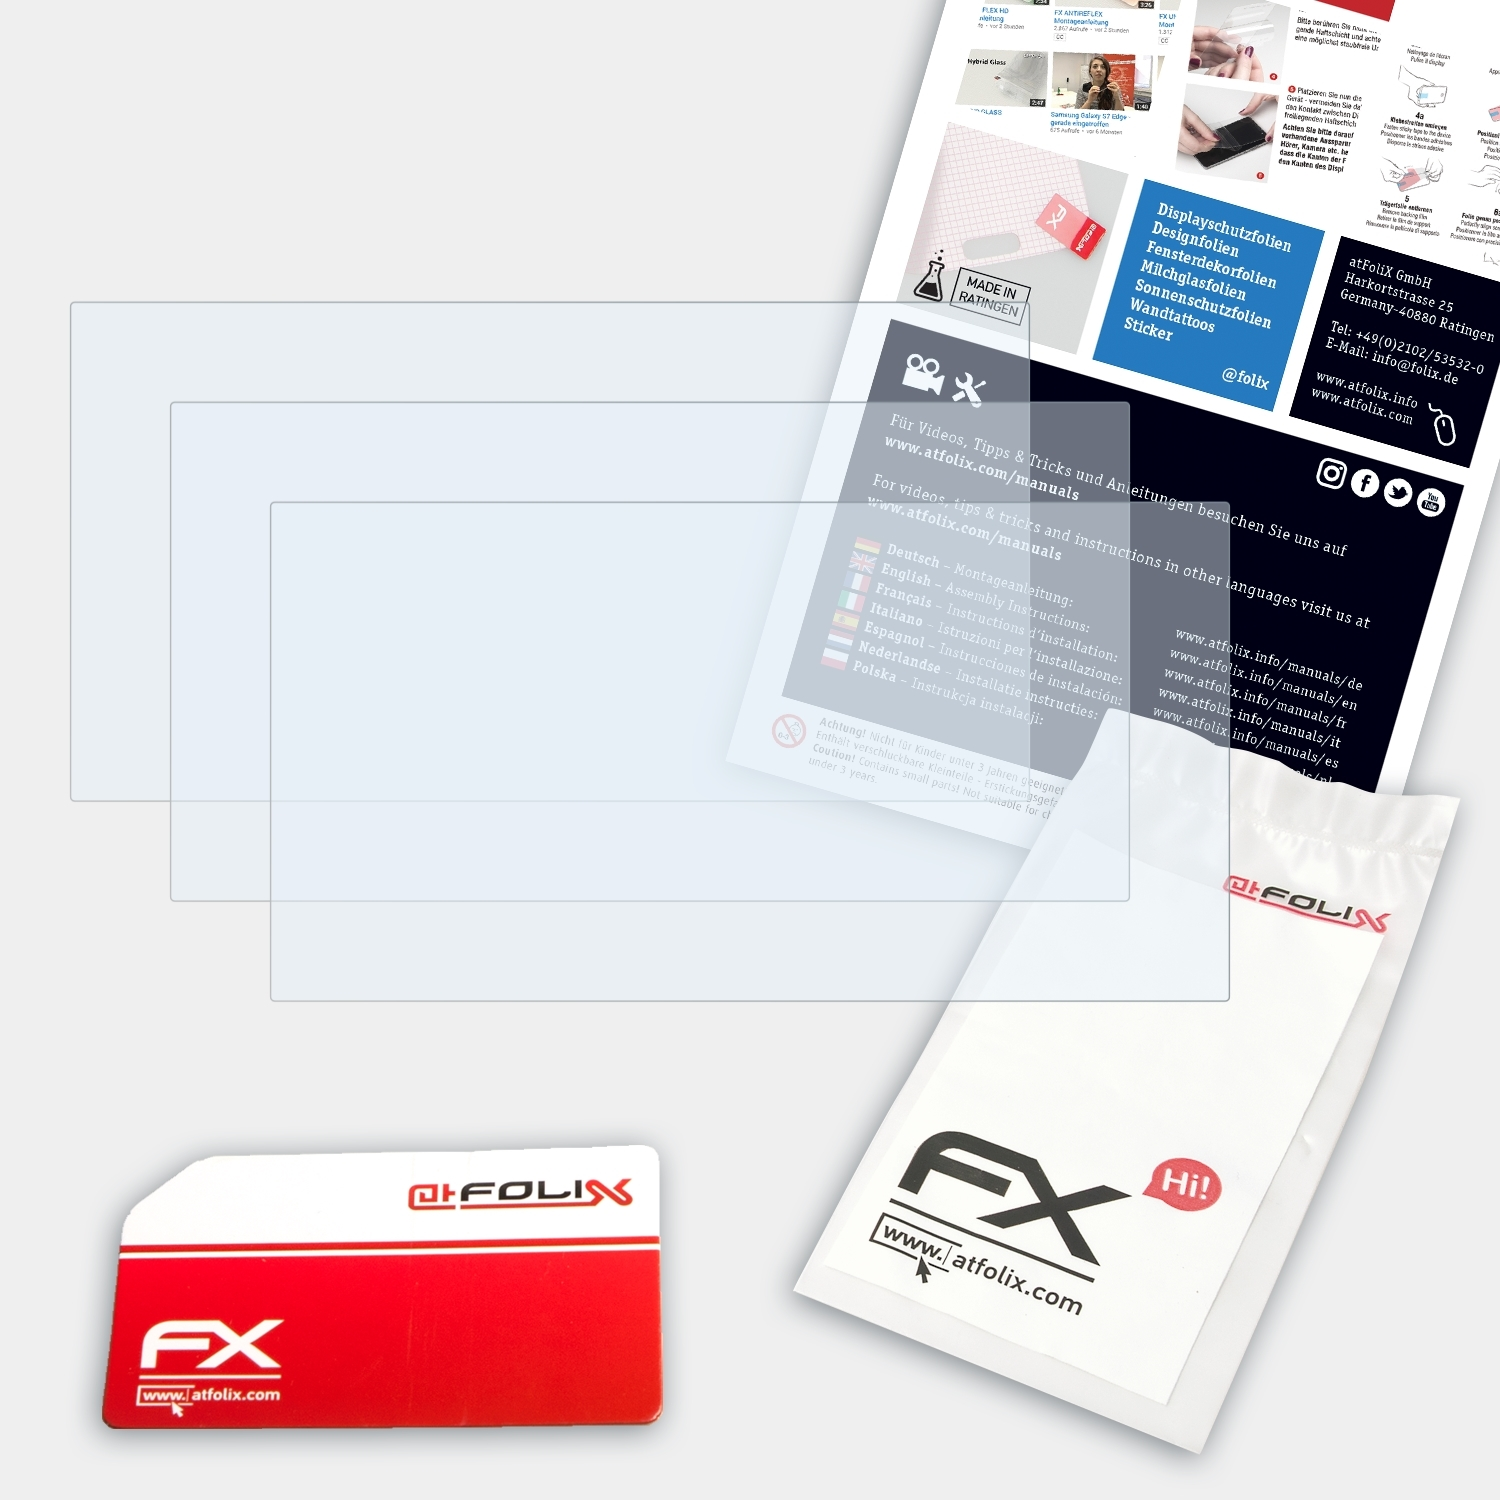 ATFOLIX 3x FX-Clear Displayschutz(für Kenwood DNX8170DABS)